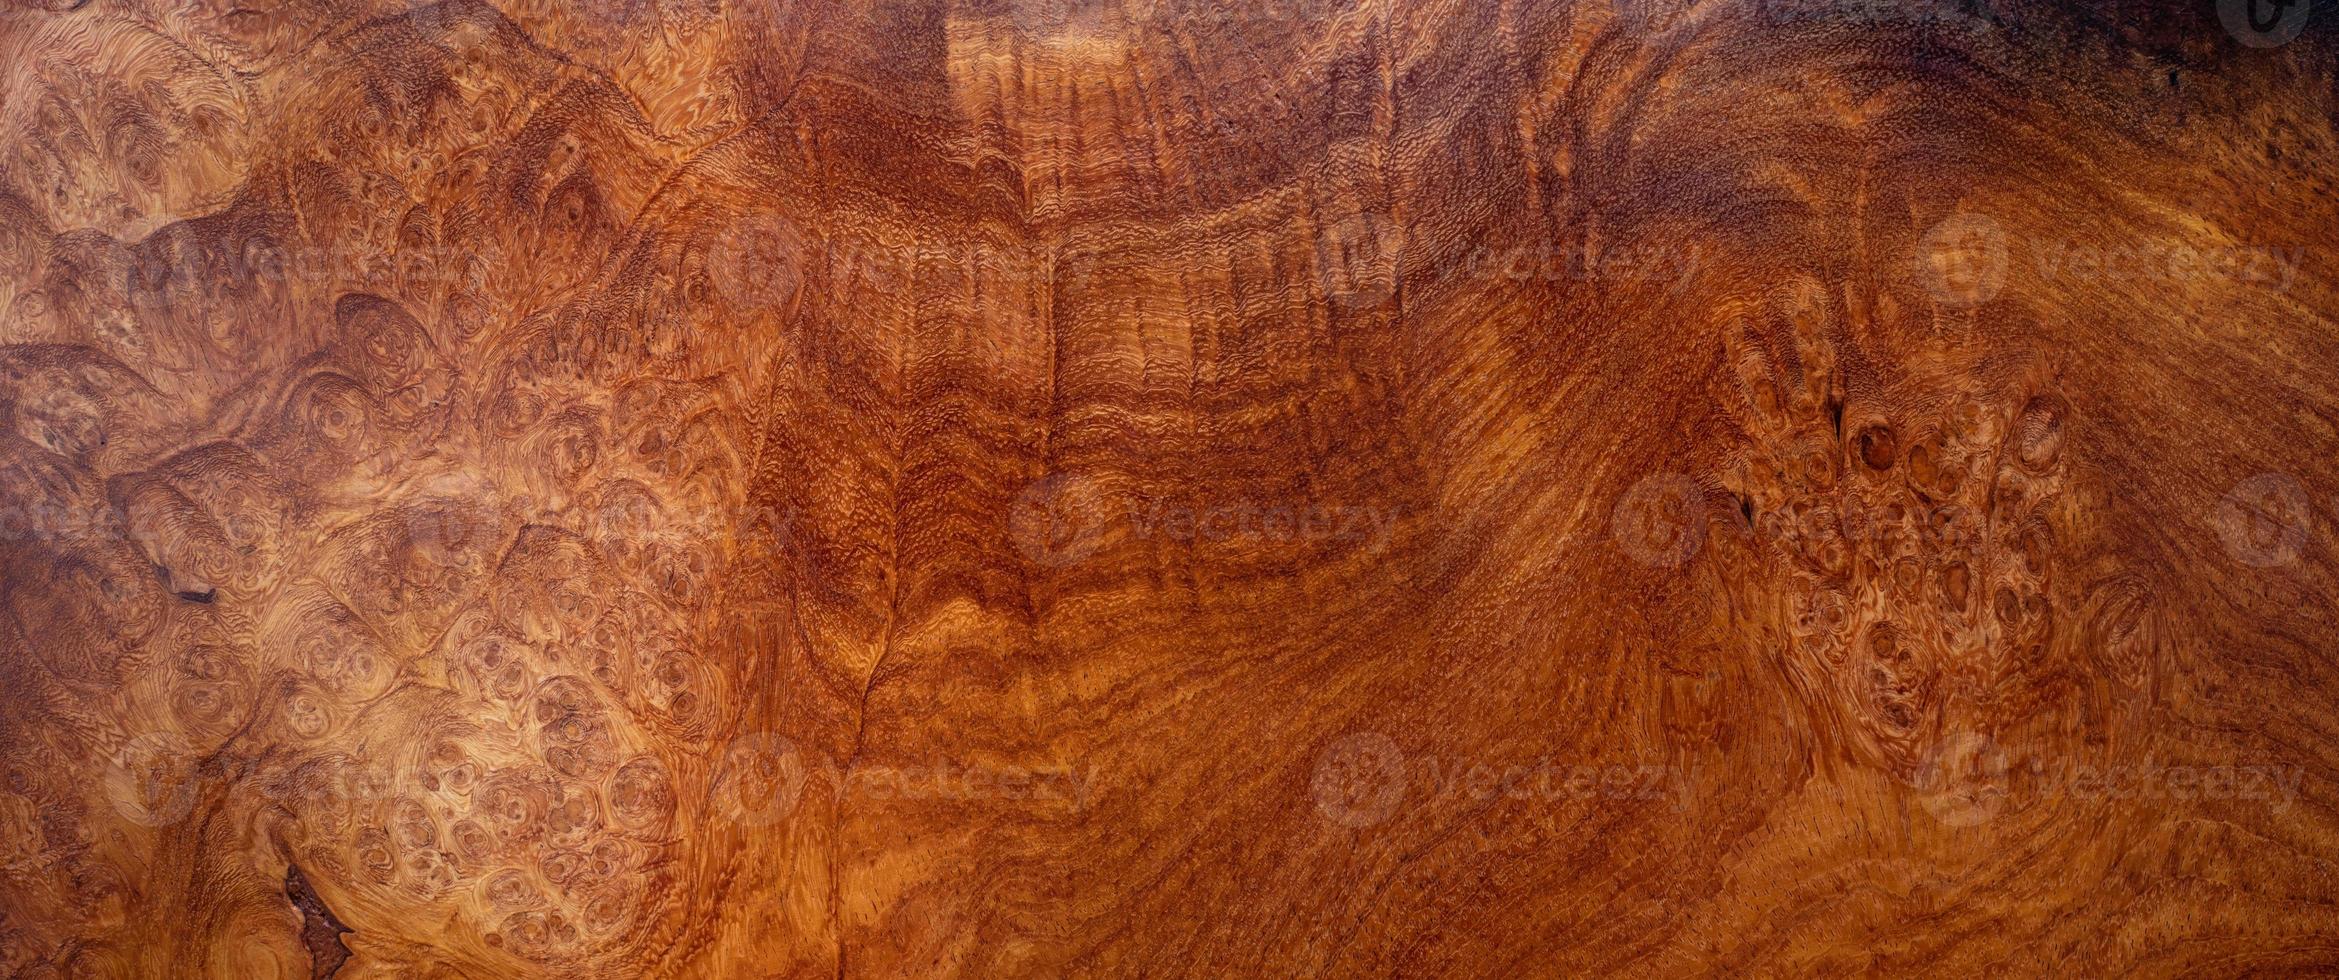 texture bois brun photo